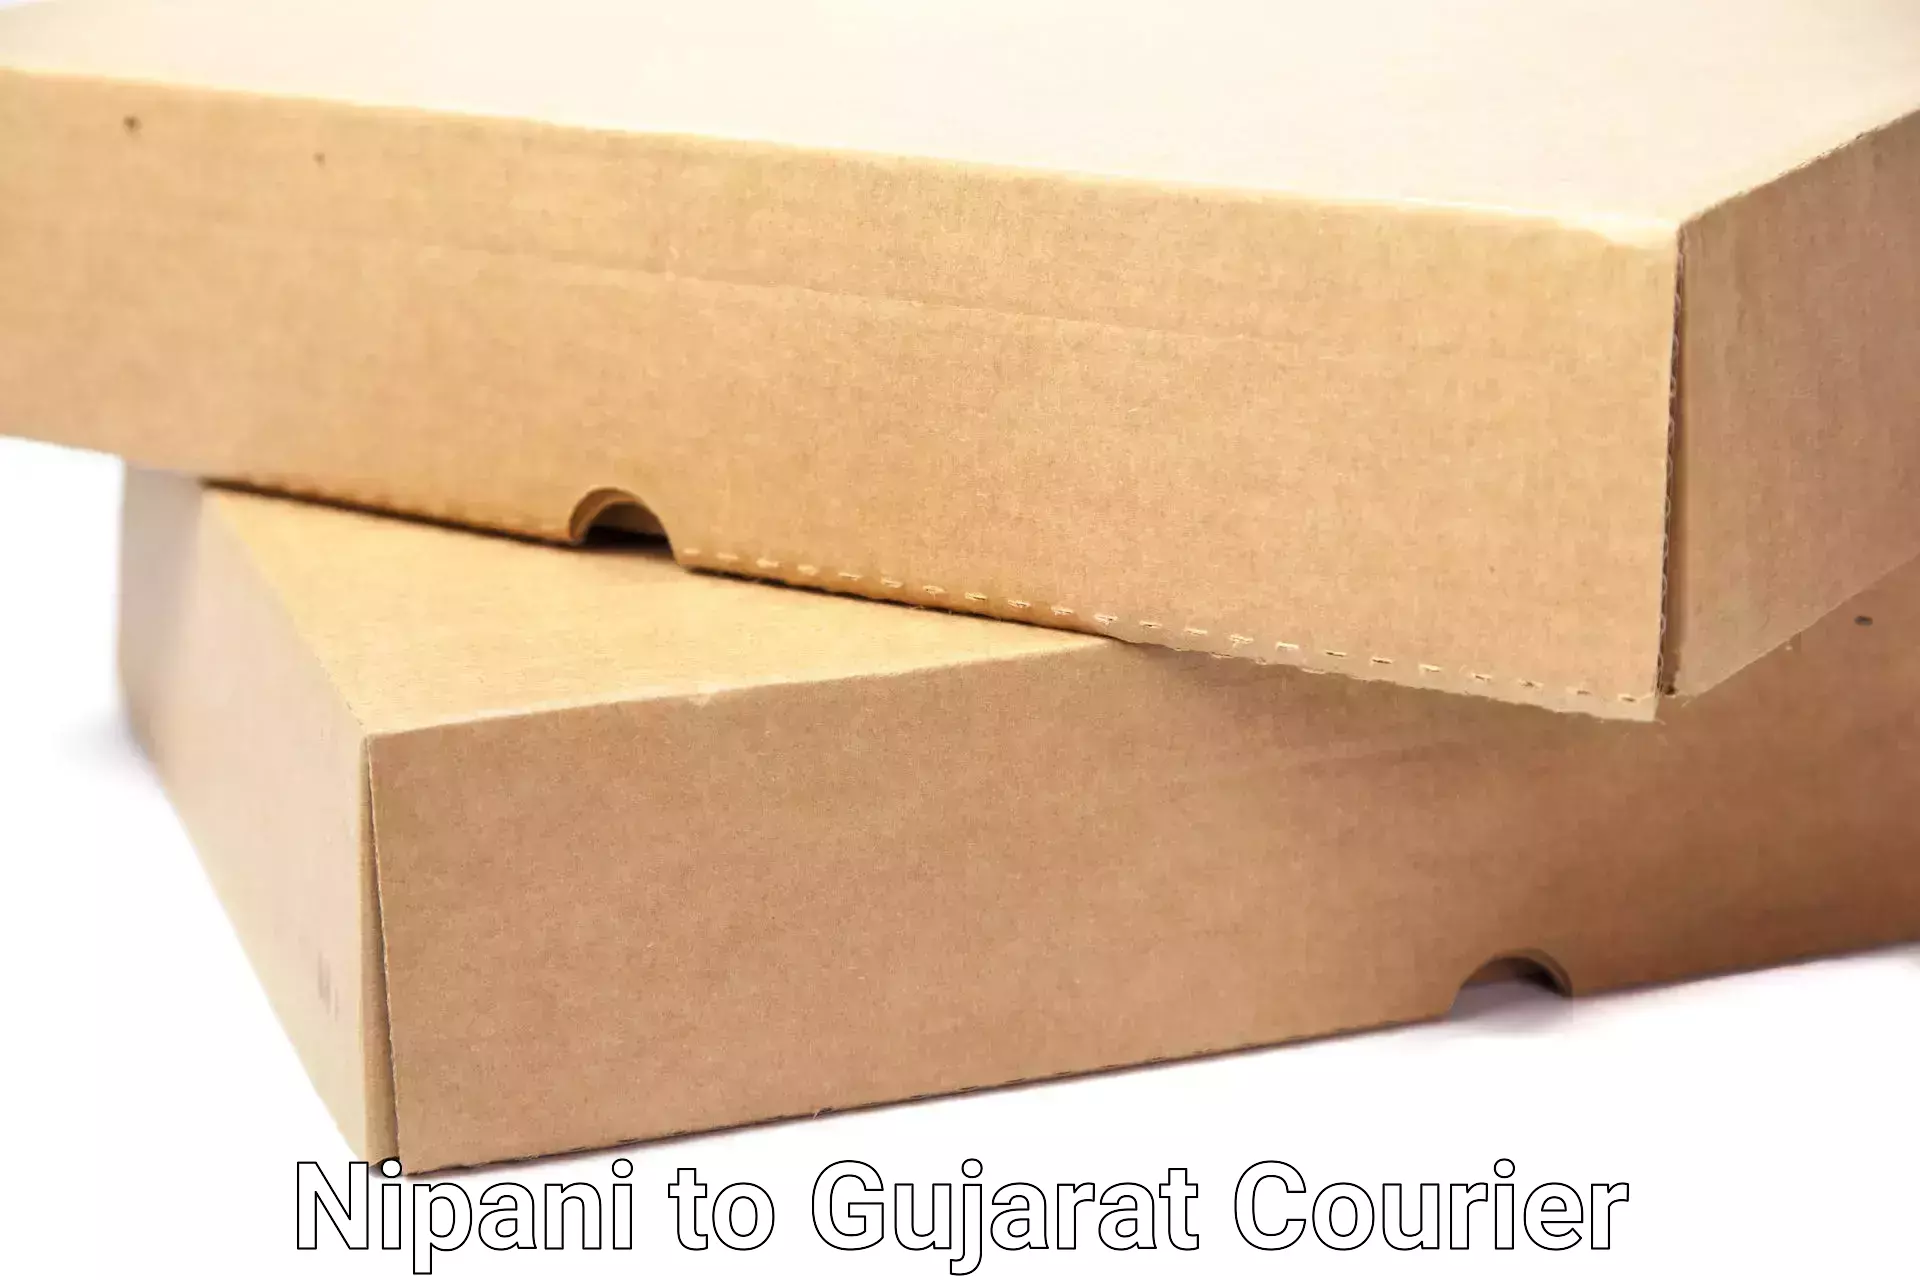 Furniture moving specialists Nipani to Patan Gujarat